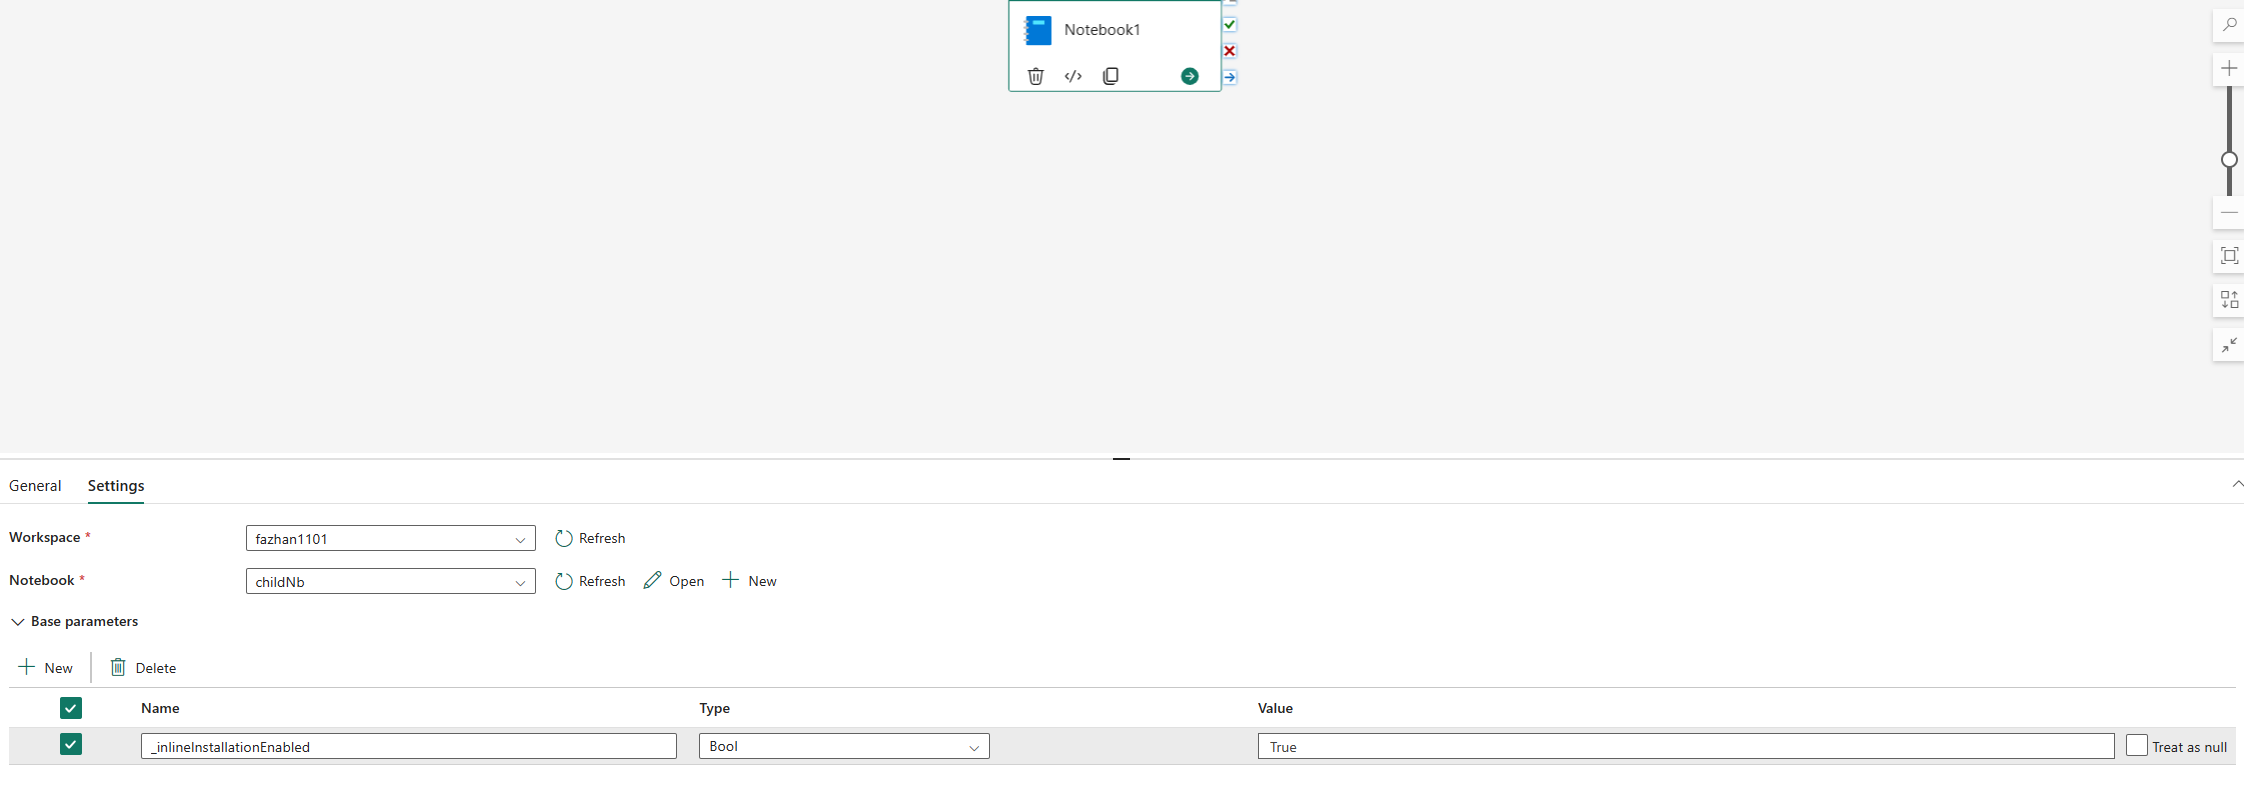 Képernyőkép a pipek notebook-folyamat futtatásához való engedélyezésének konfigurációjáról.